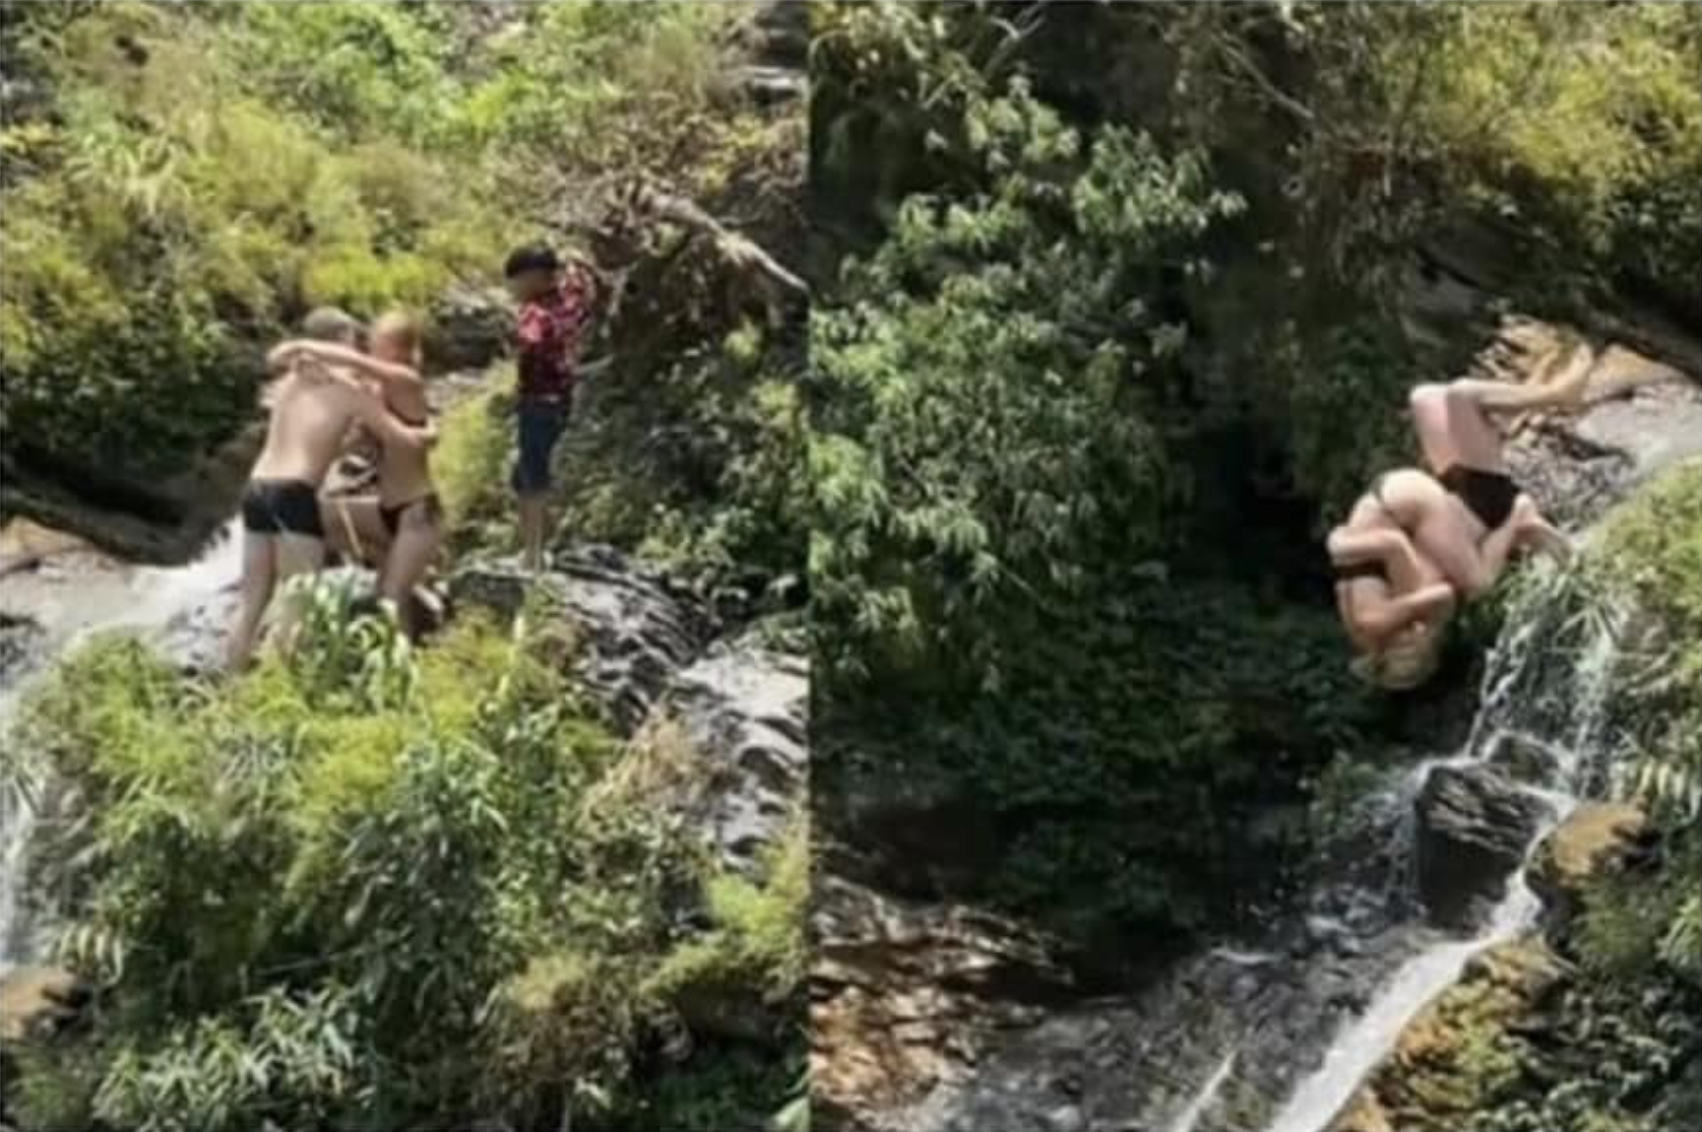 Hình ảnh một cặp đôi du khách người nước ngoài thực hiện các động tác nhào lộn khi nhảy thác ở thác nước Du Già (Hà Giang) được lan truyền trên mạng xã hội khiến nhiều người học hỏi muốn làm theo. Tuy nhiên, hành động này đã được cảnh báo nguy hiểm